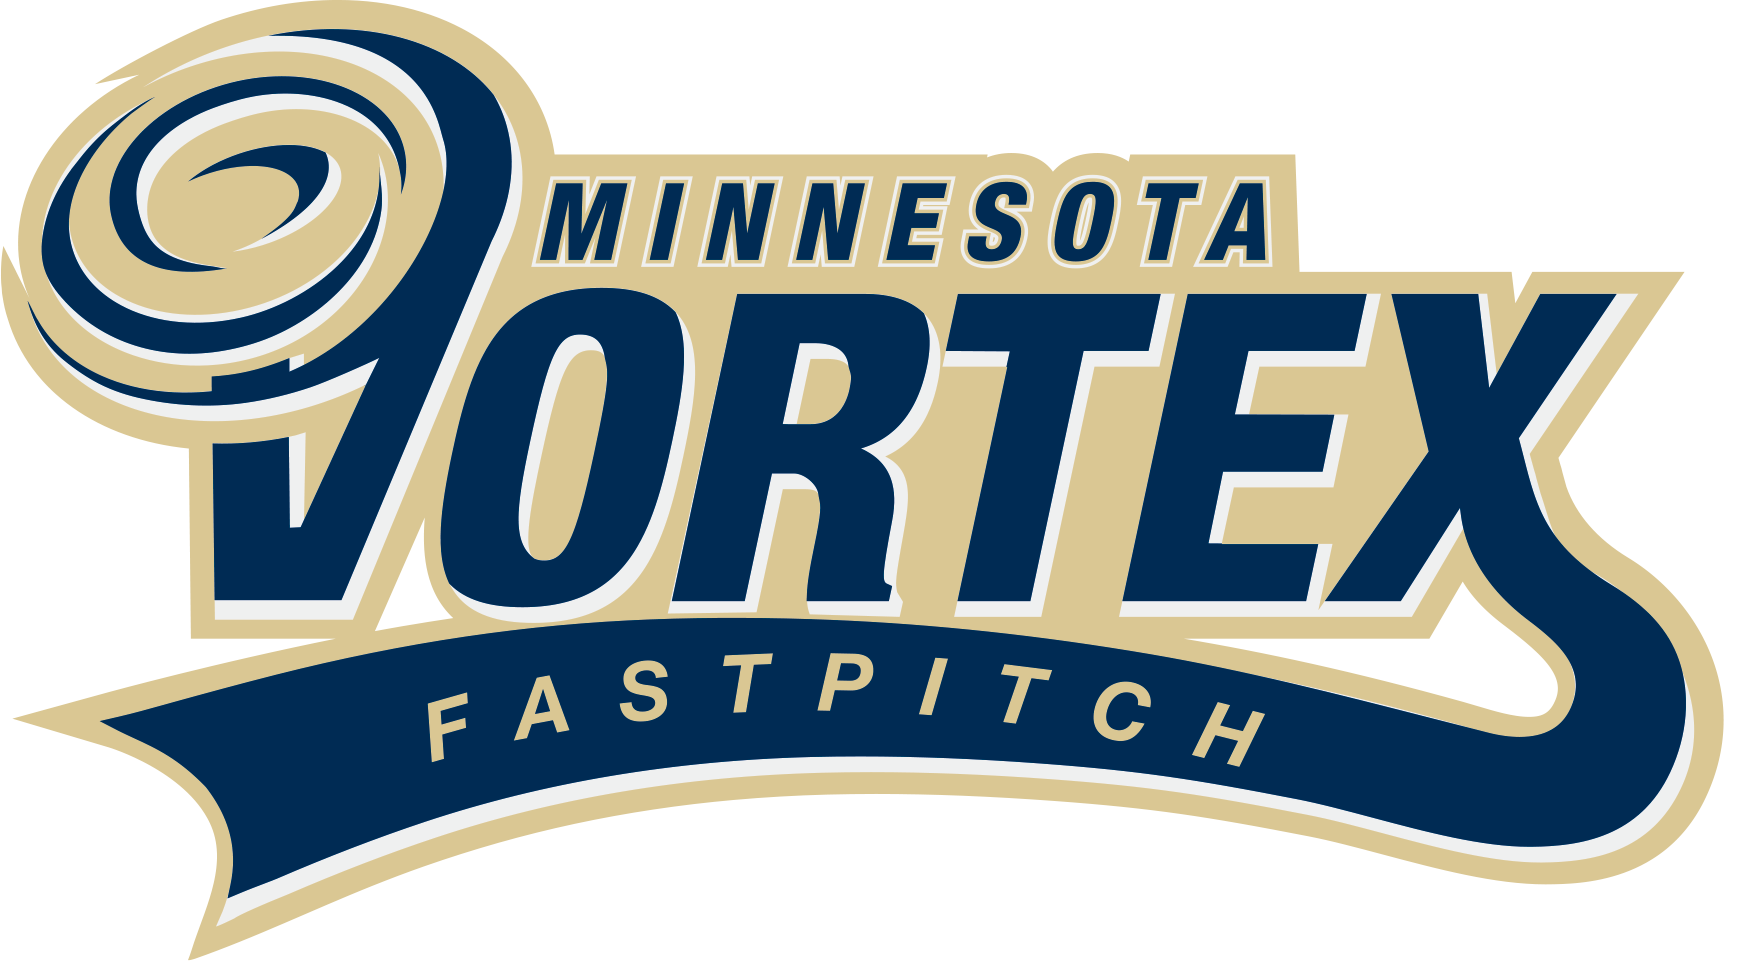 Vortex_Logo